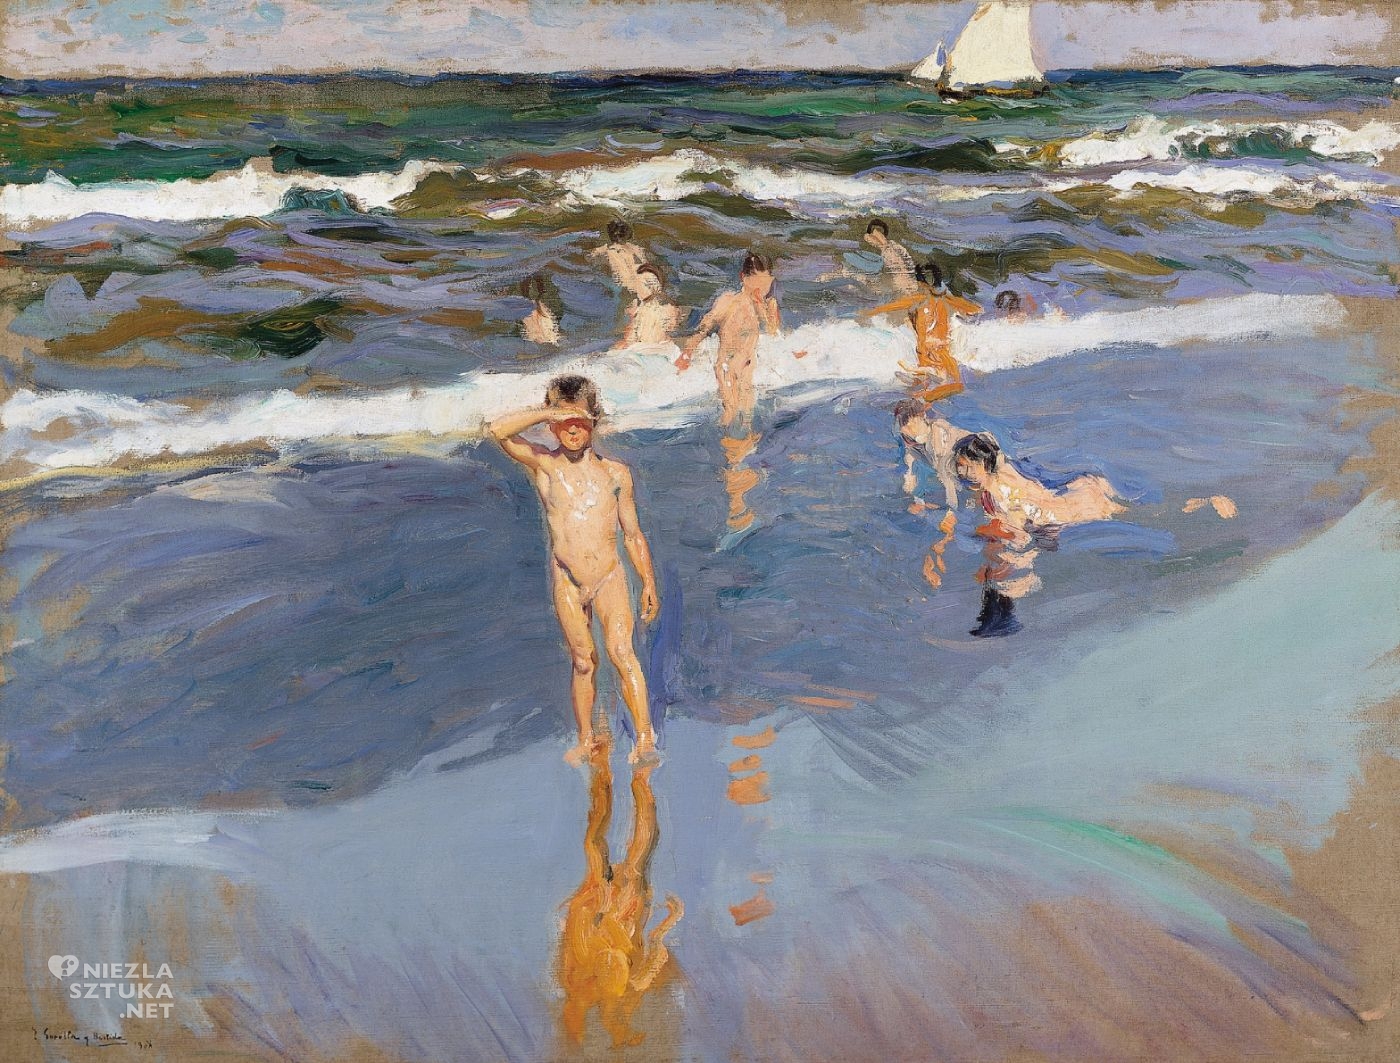 Joaquin Sorolla, Dzieci w morzu, Plaża w Walencji, Niños en el Mar, Playa de Valencia, dzieci, walencja, sztuka hiszpańska, impresjonizm, olej, płótno, niezła sztuka